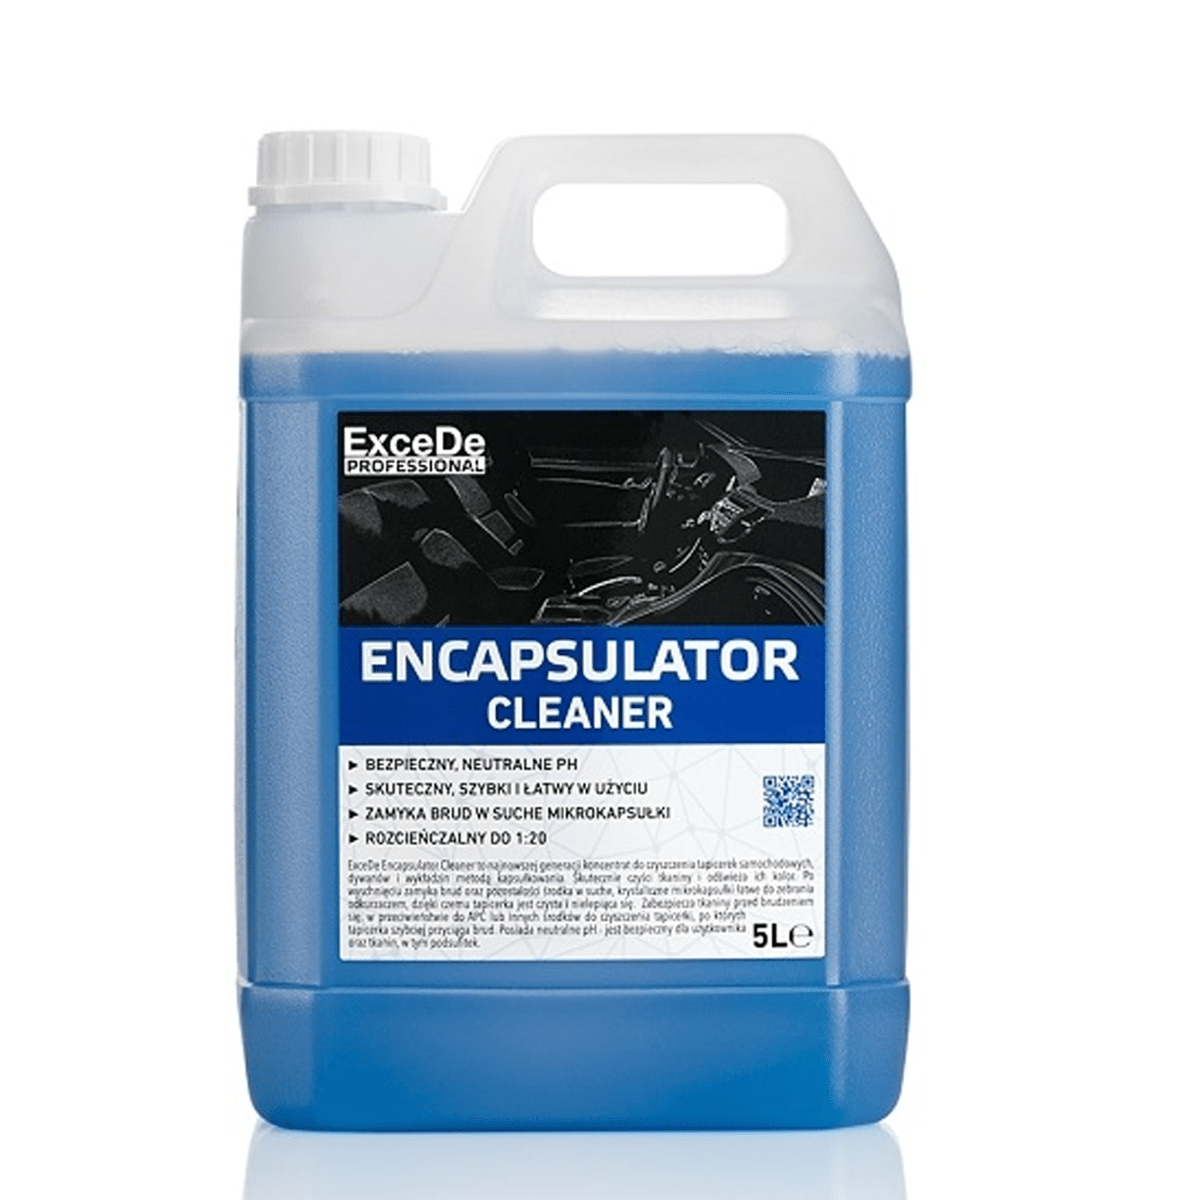 Excede Encapsulator Cleaner 5l